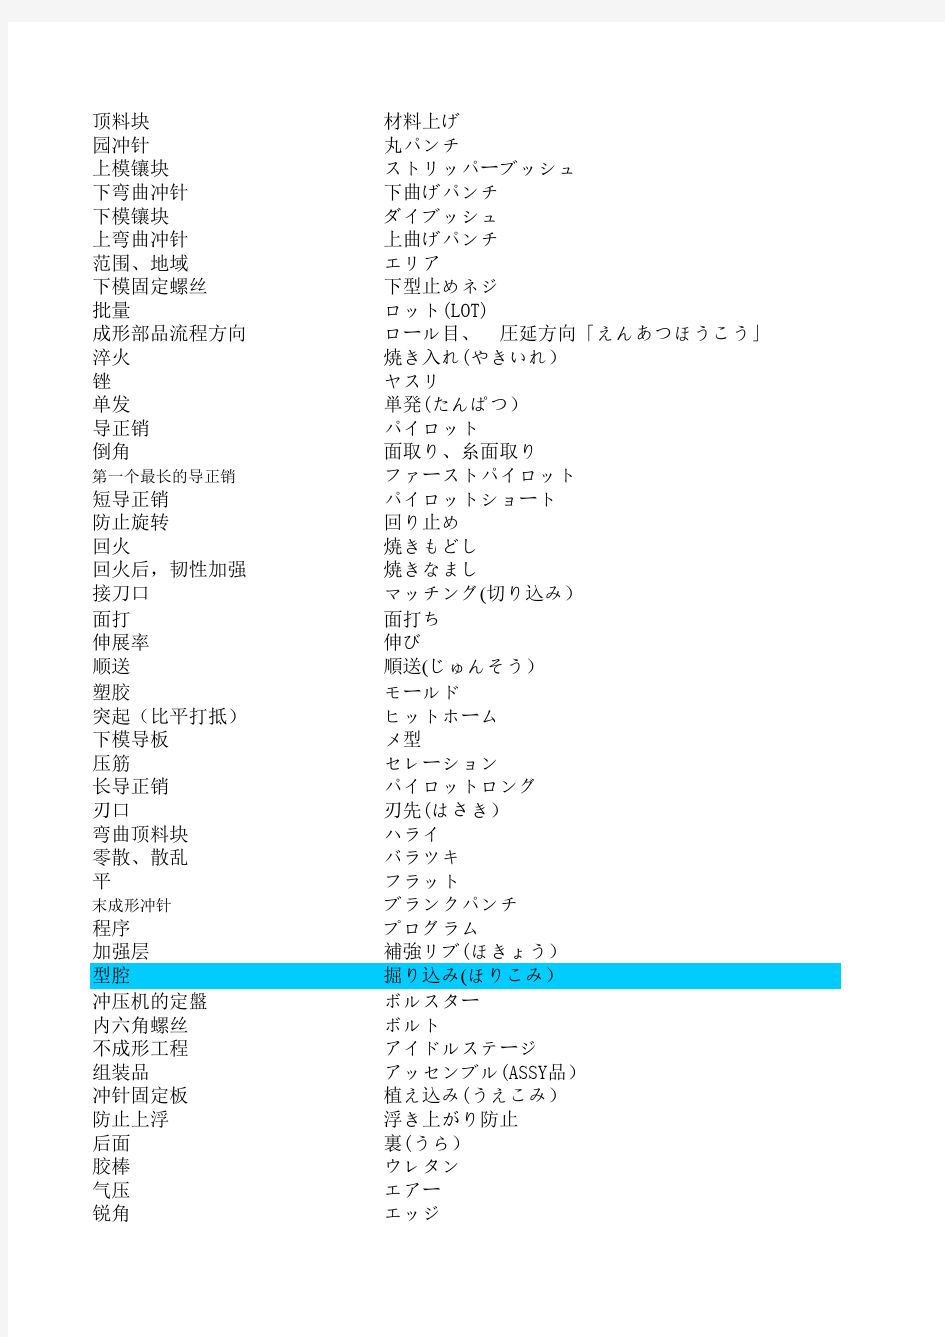 日语专业术语(包括一些机电词汇)